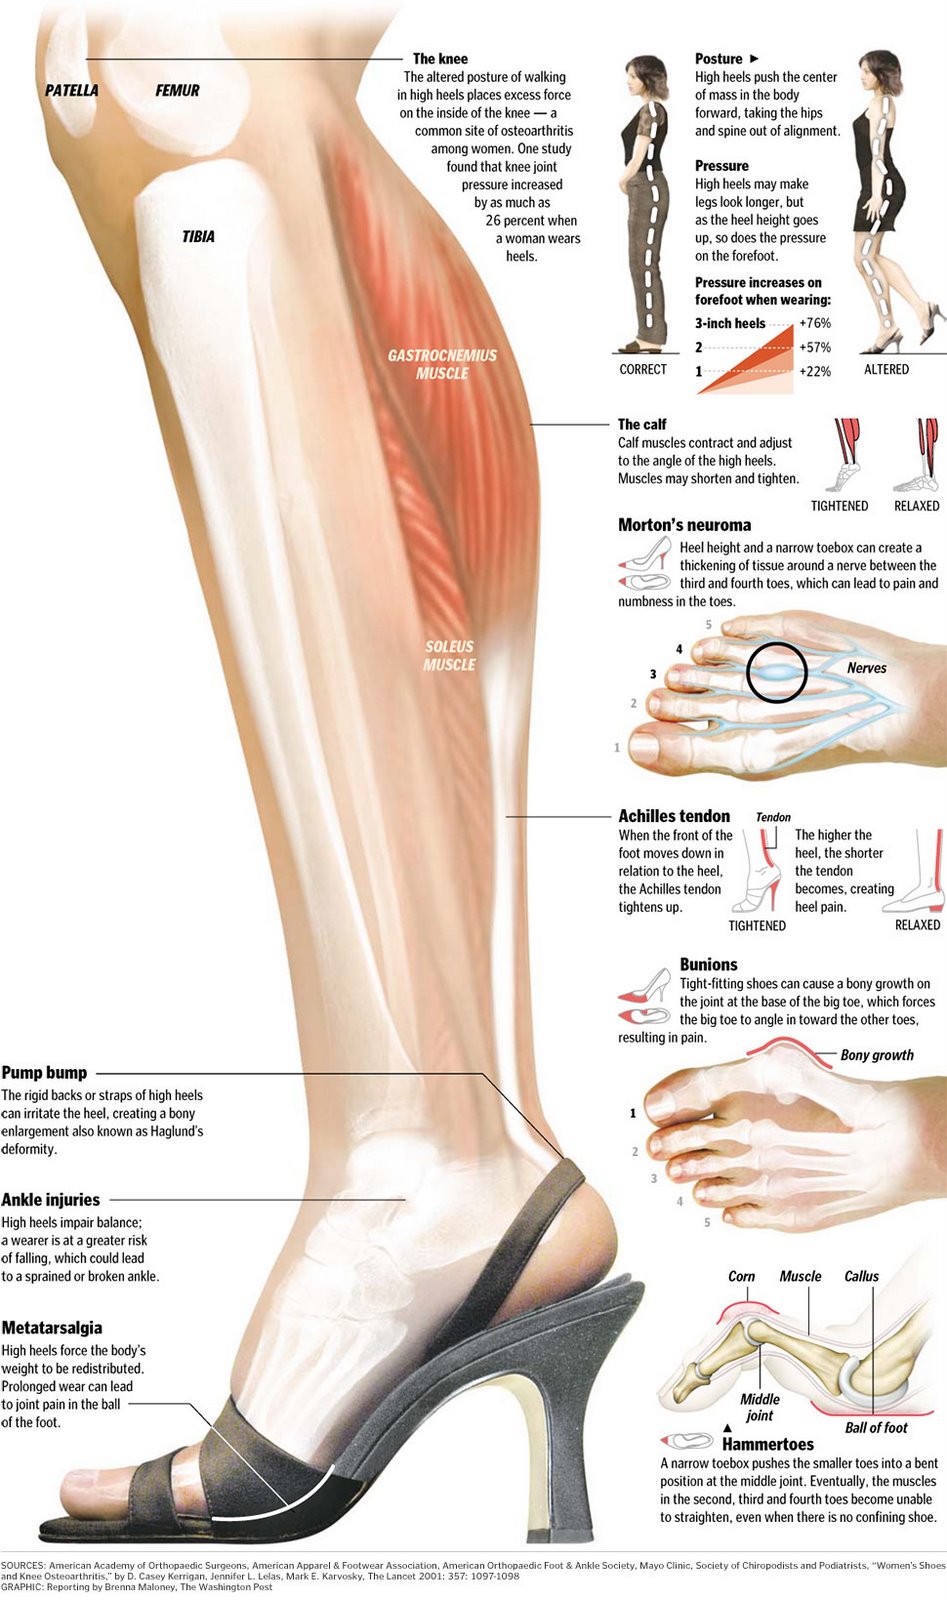 High heels effect on calf muscles